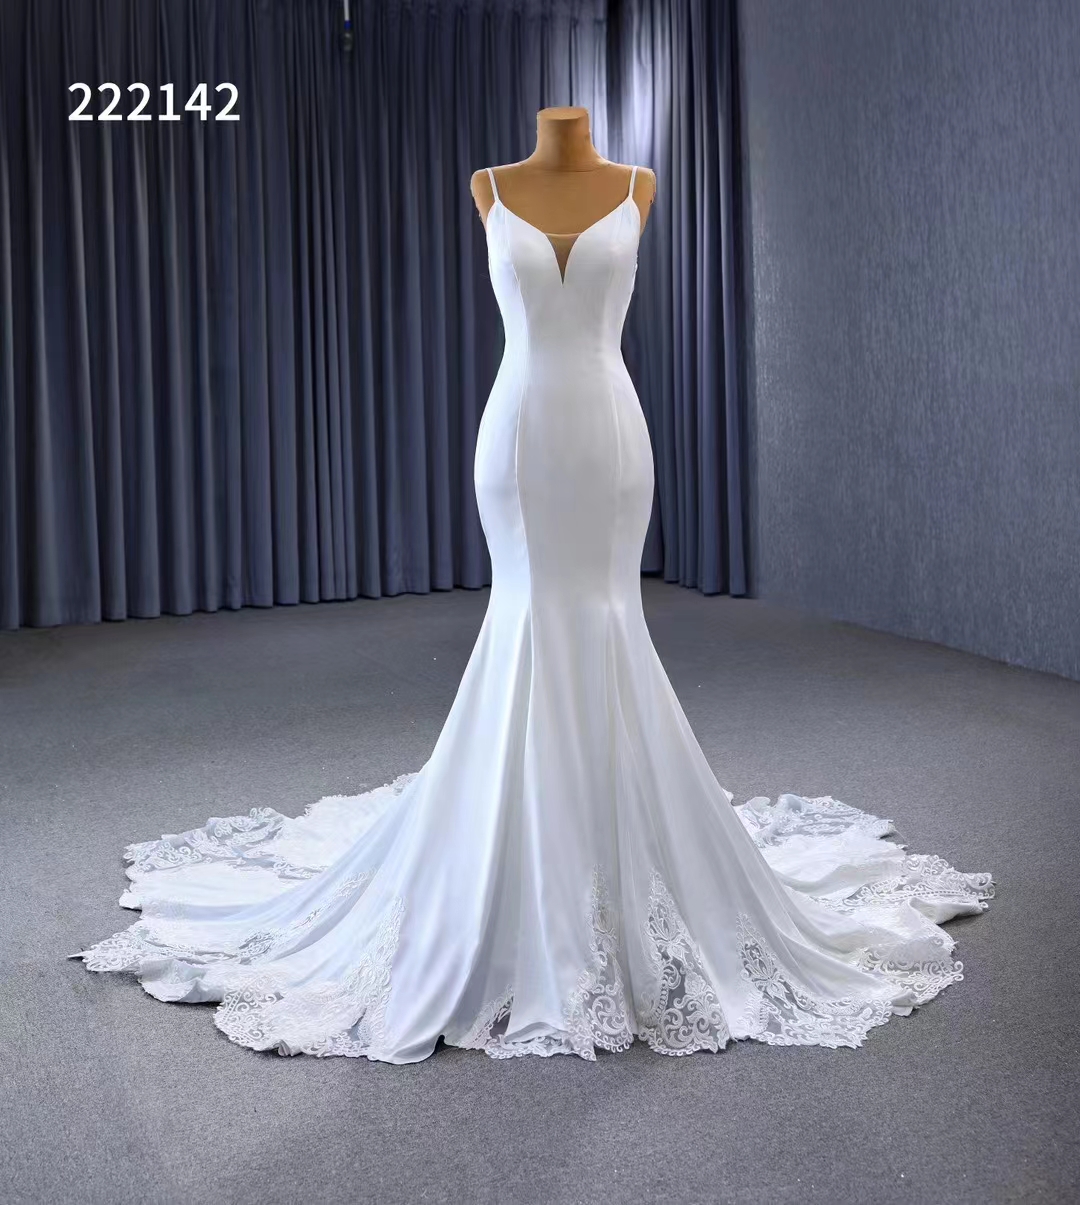 Meerjungfrau Hochzeitskleid Spaghetti -Gurtkapelle Zug Applikationen Einfach weiß SM 222142